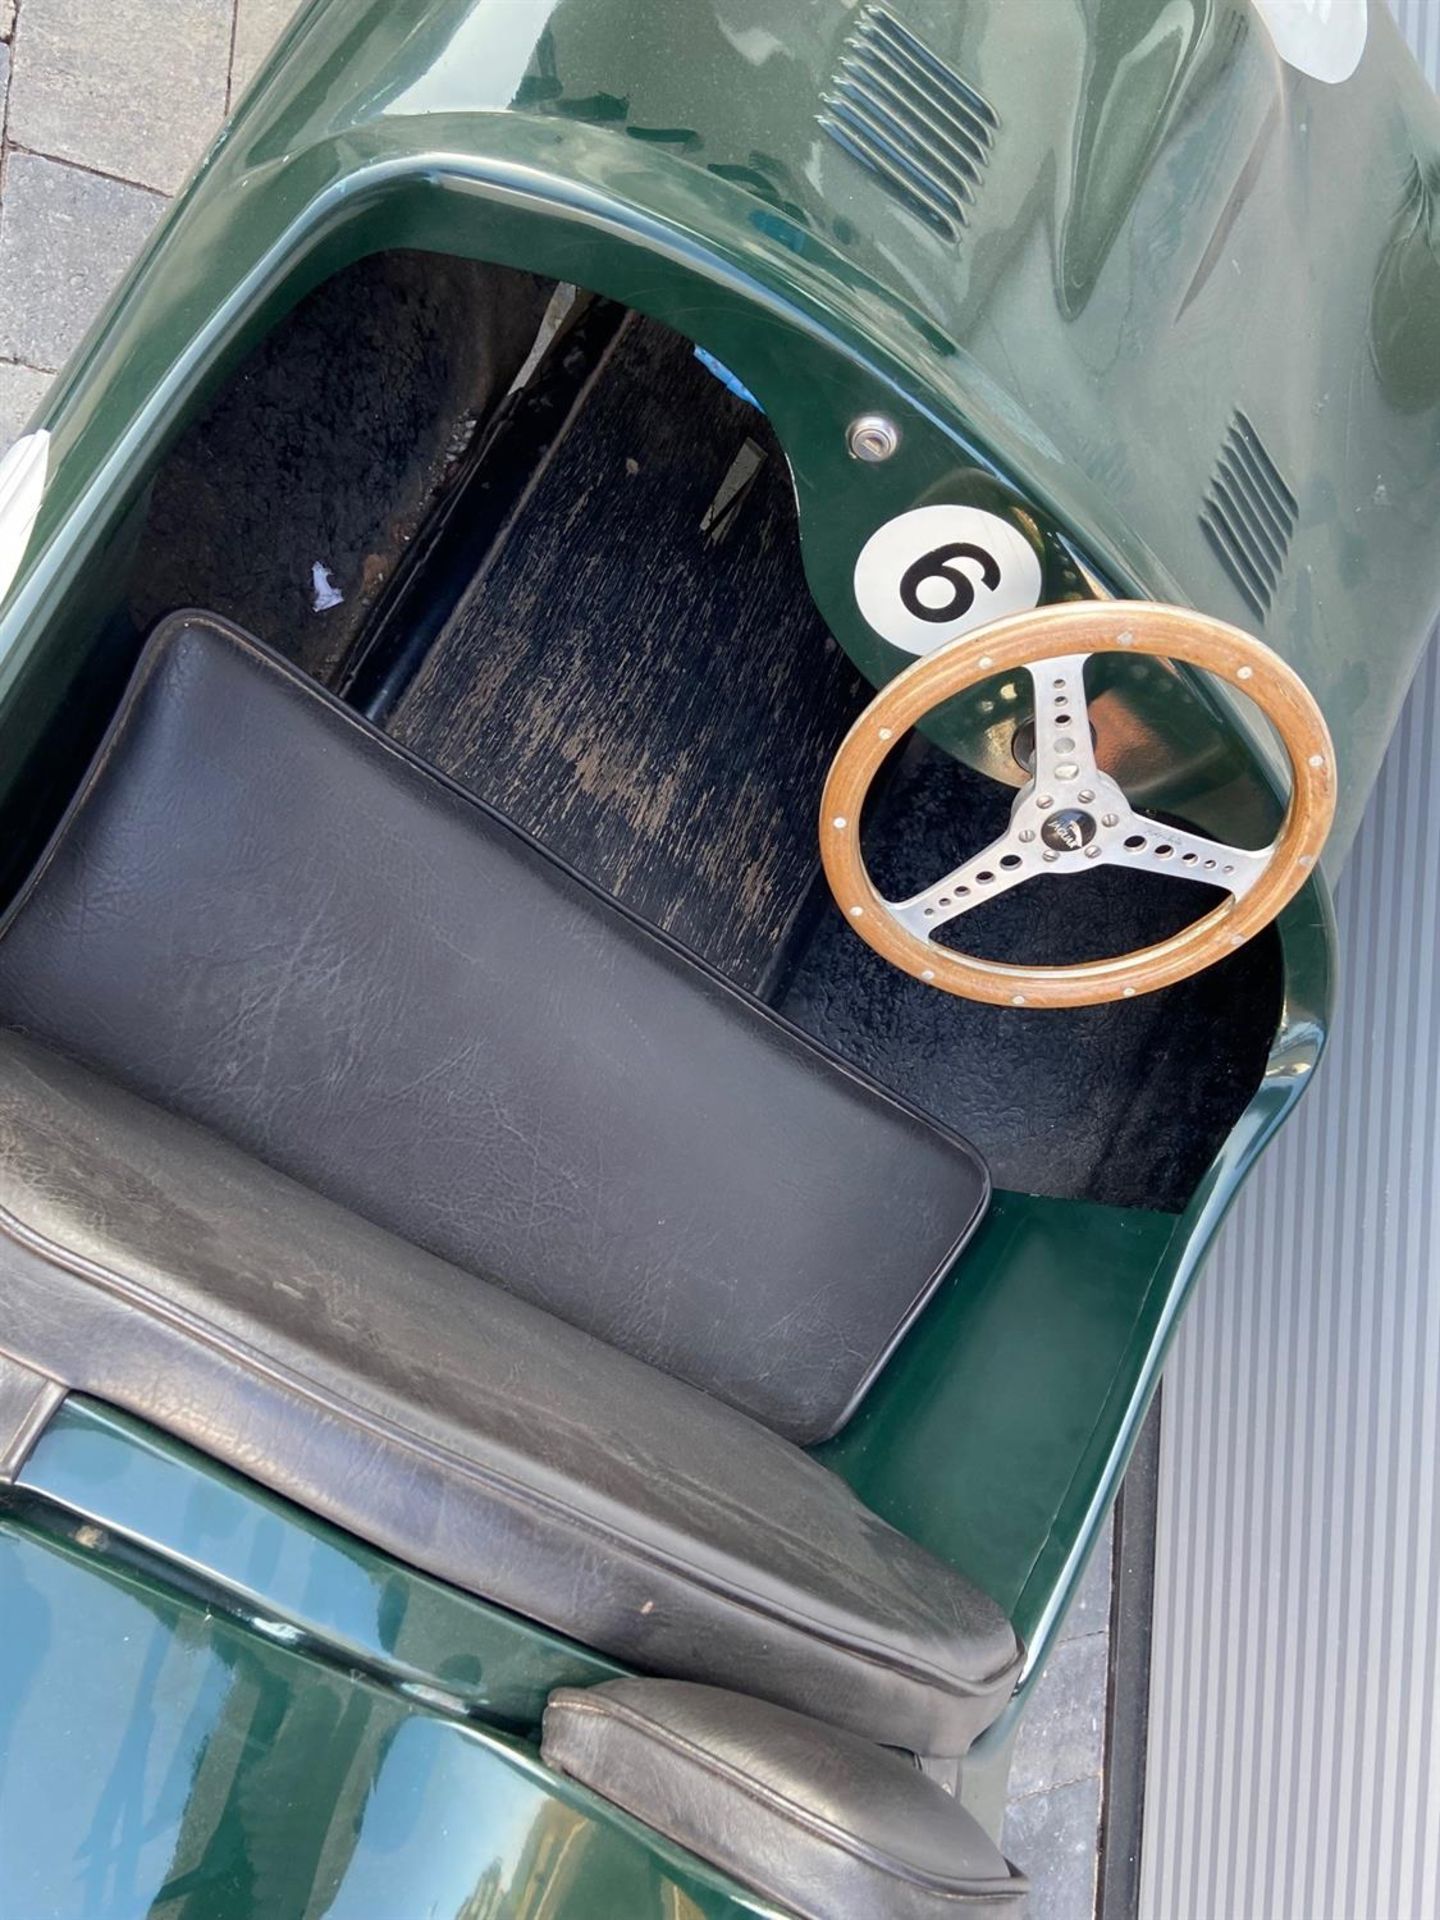 Chelton-Villiers Jaguar D-Type-Style Childrens Car - Image 3 of 9